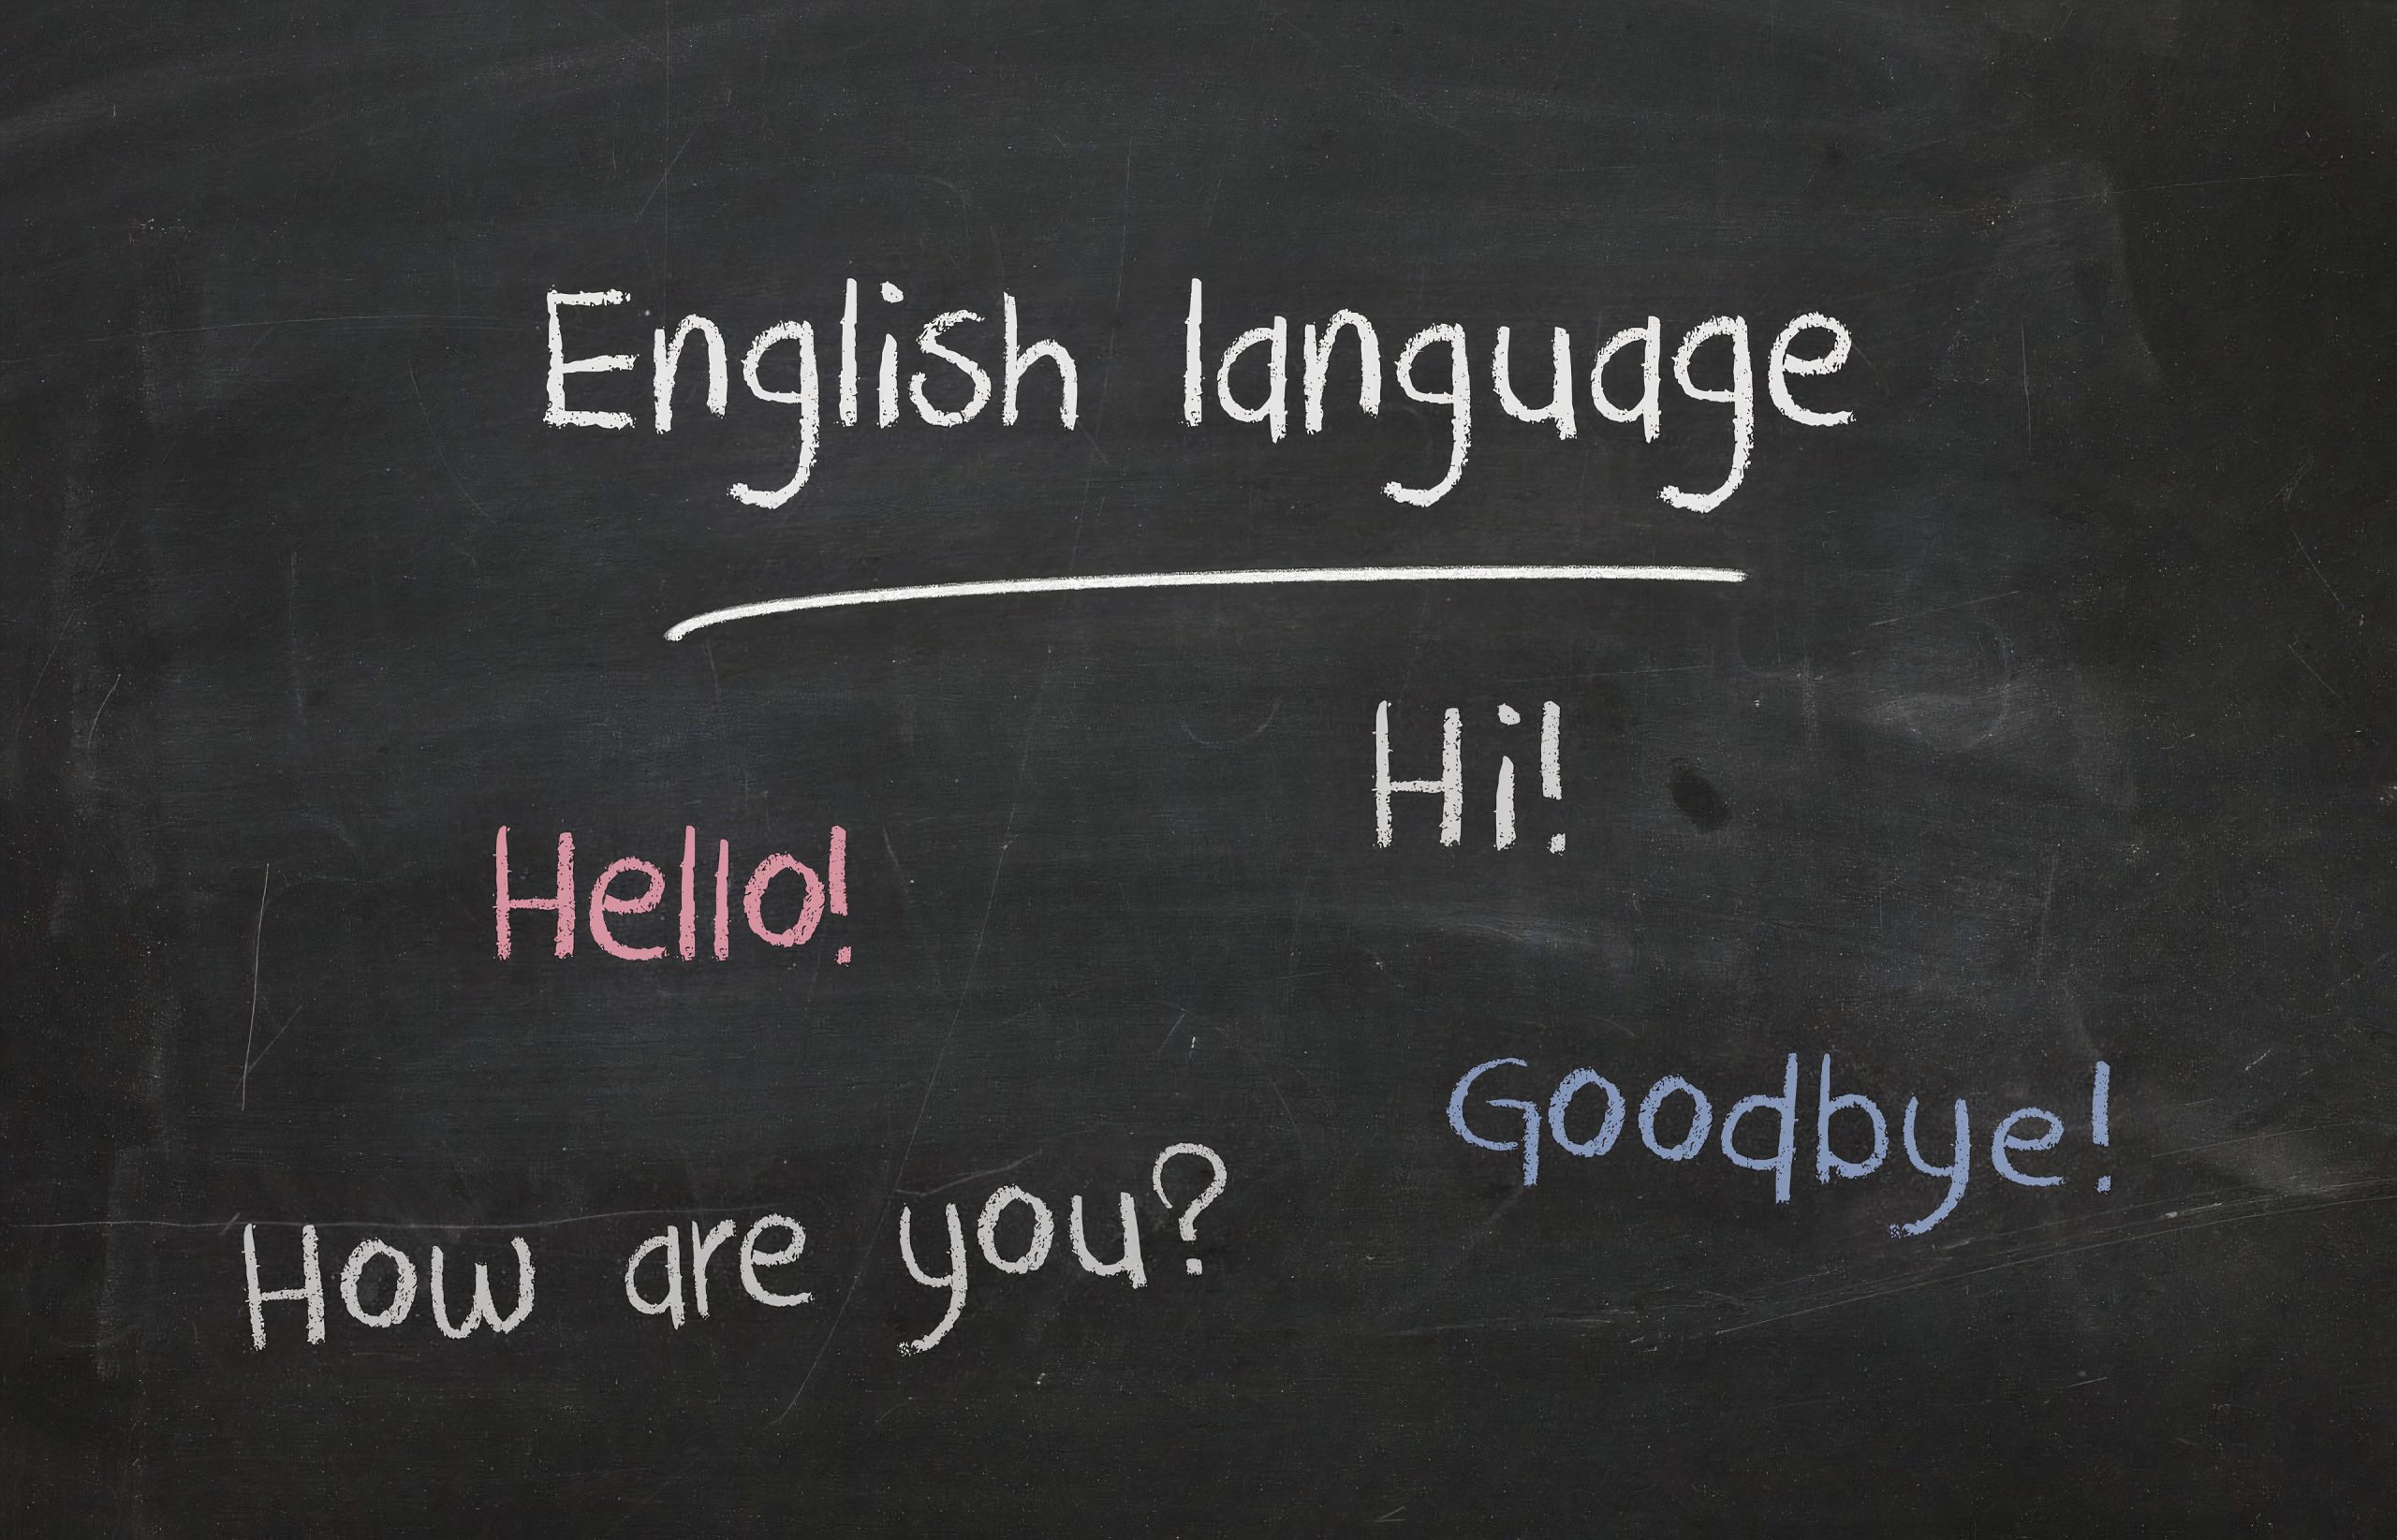 слова англійською мовою в США в школі написані на дошці